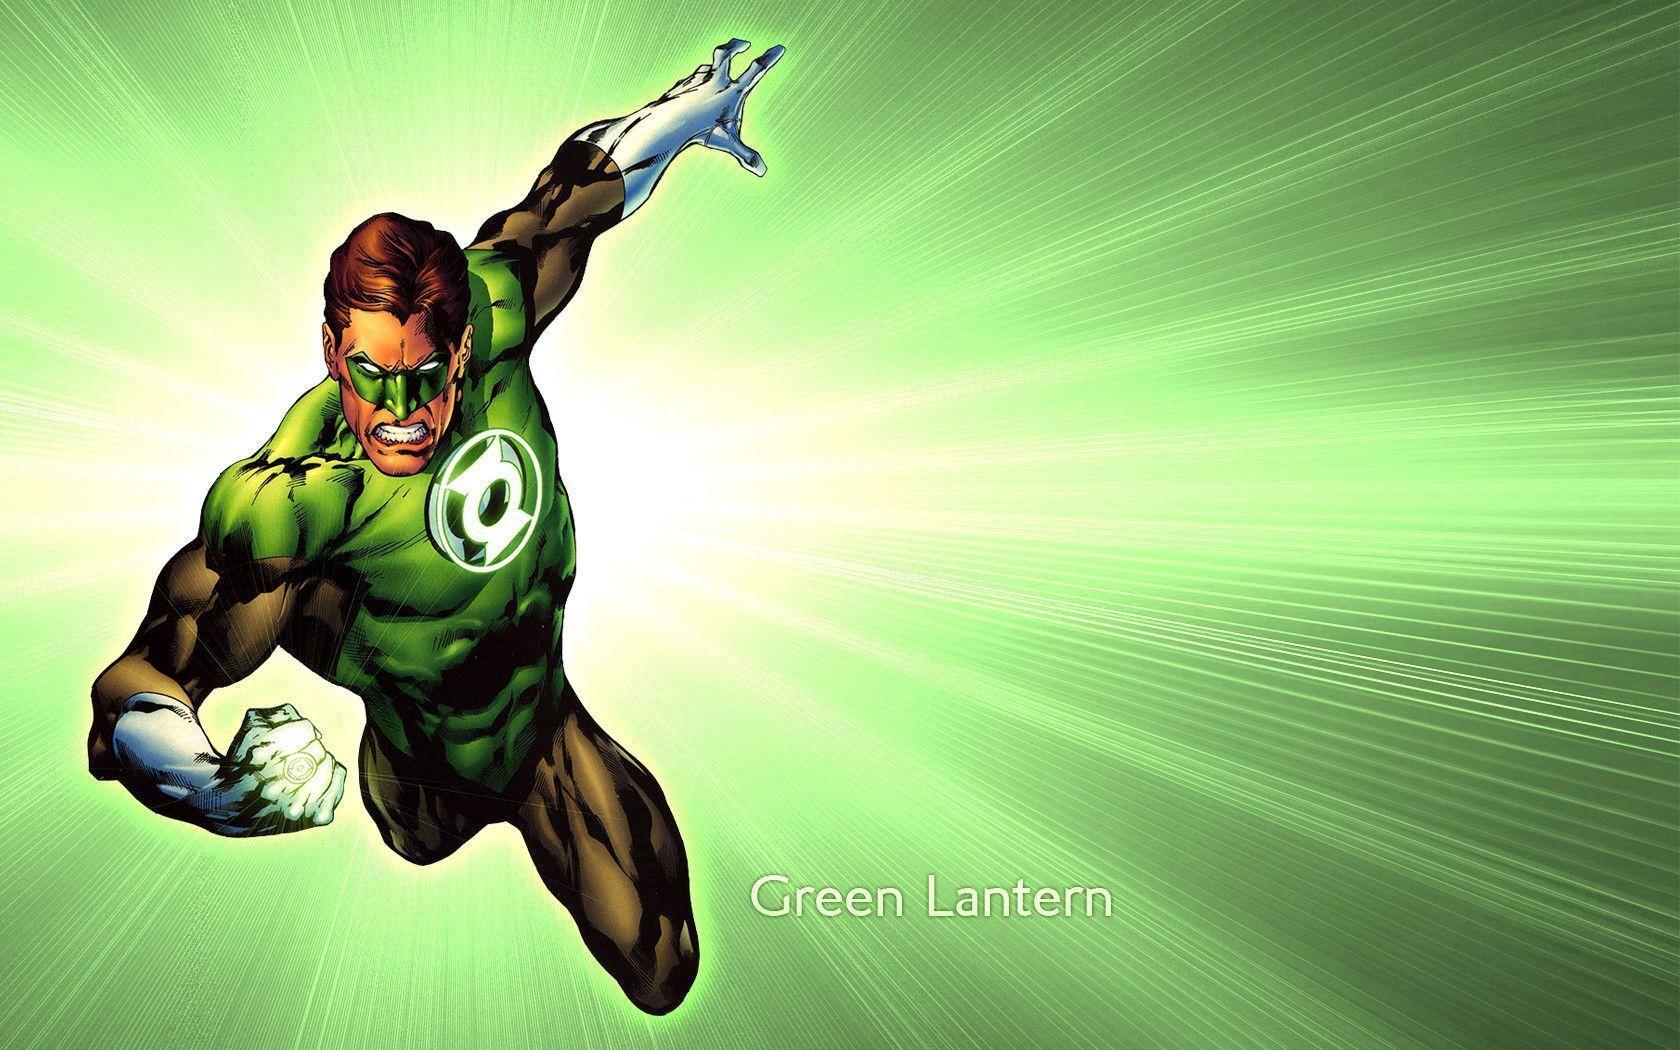 Green Lantern wallpapers